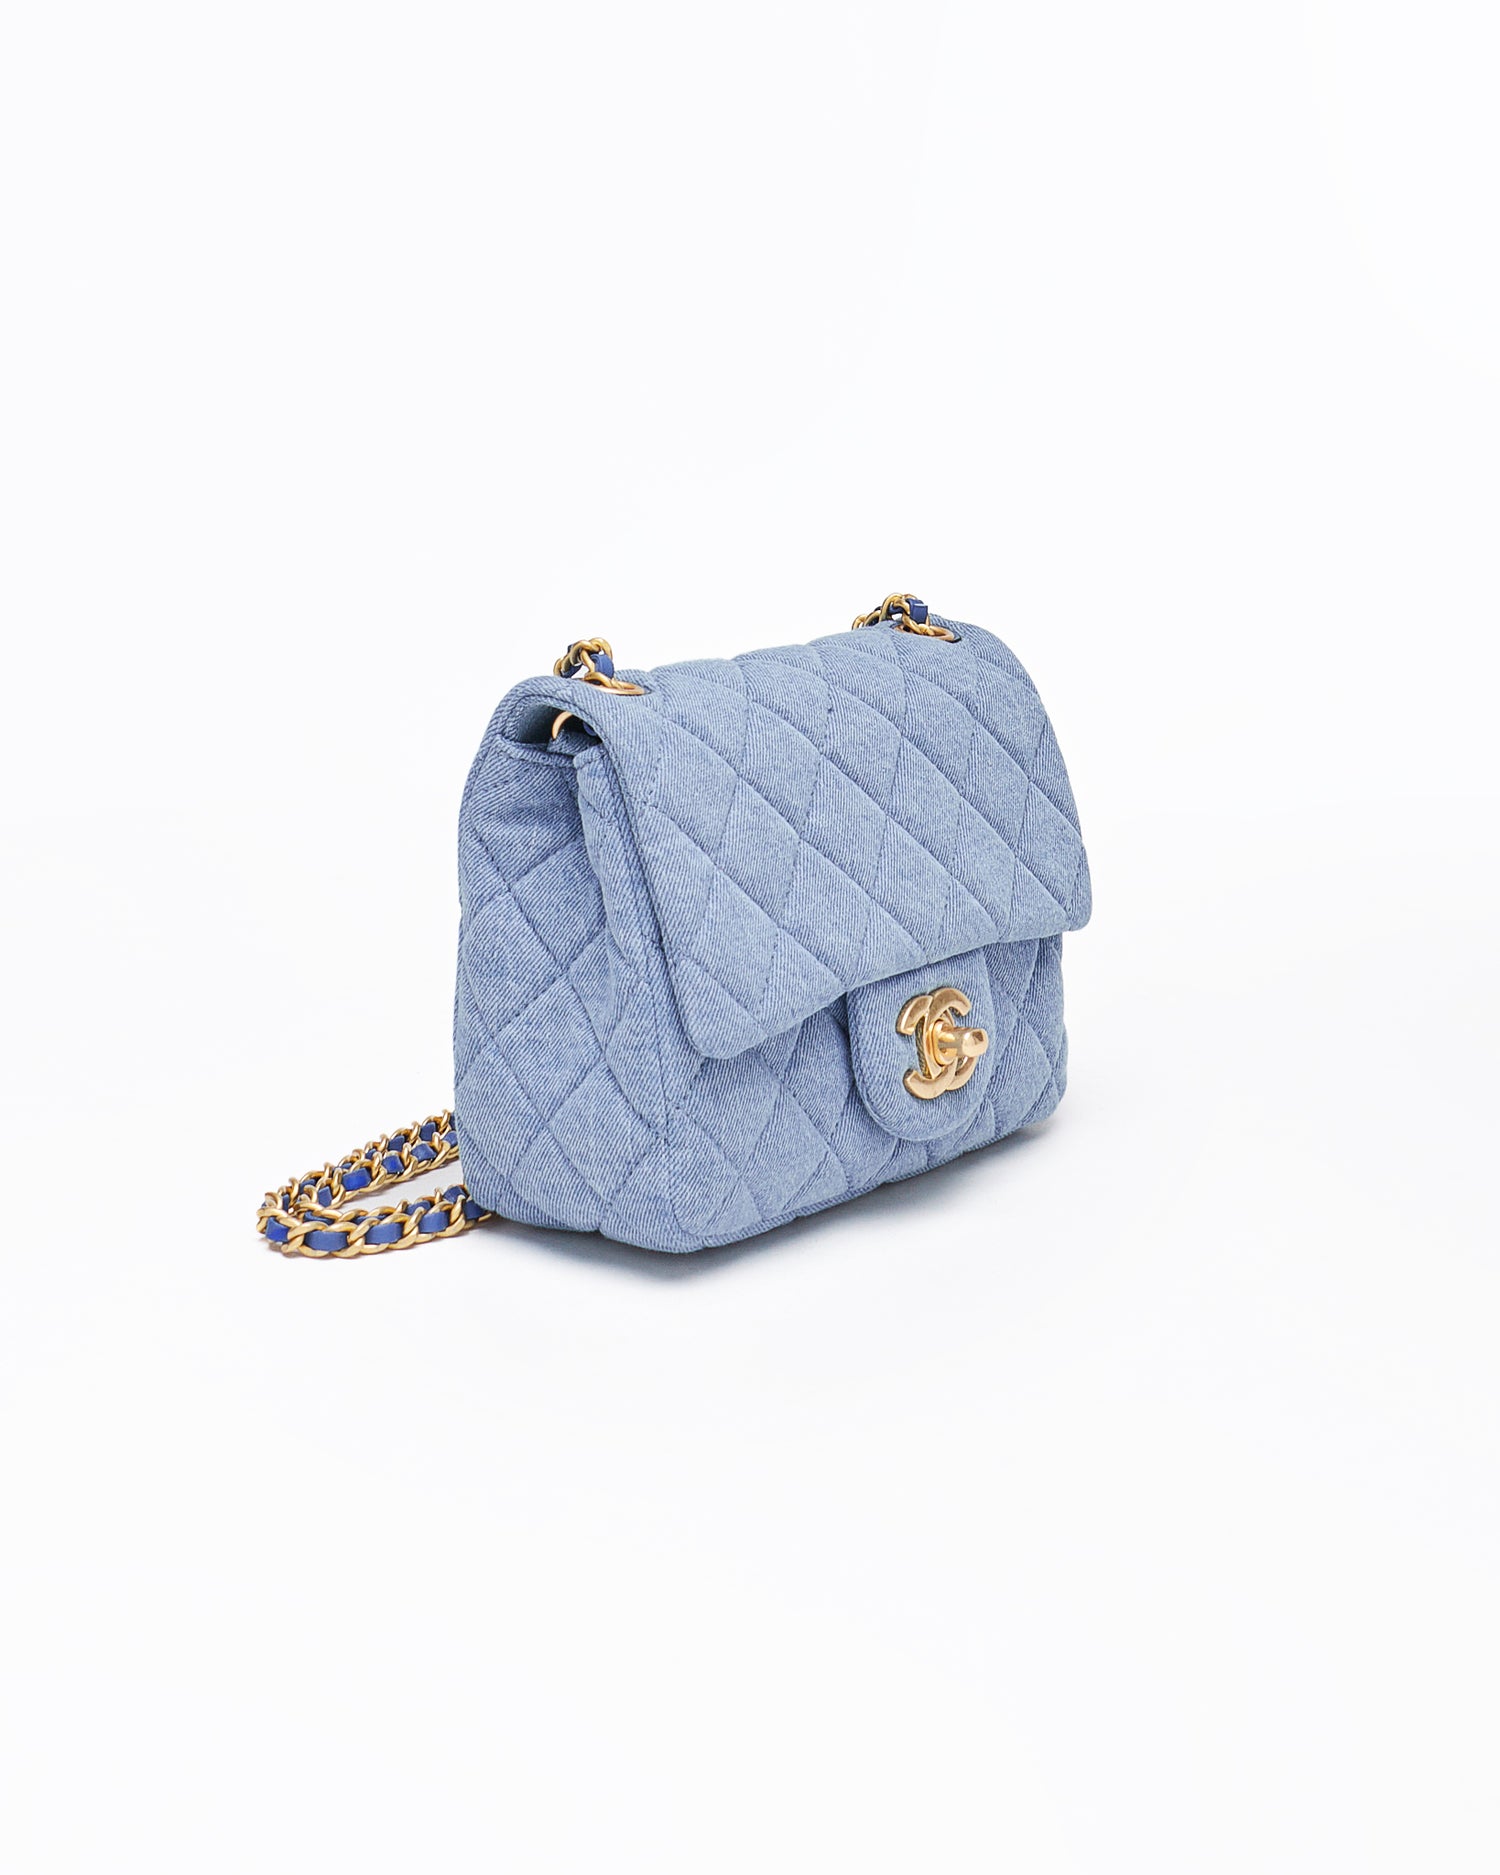 CHA Mini Classic Flap Lady Blue Bag 209